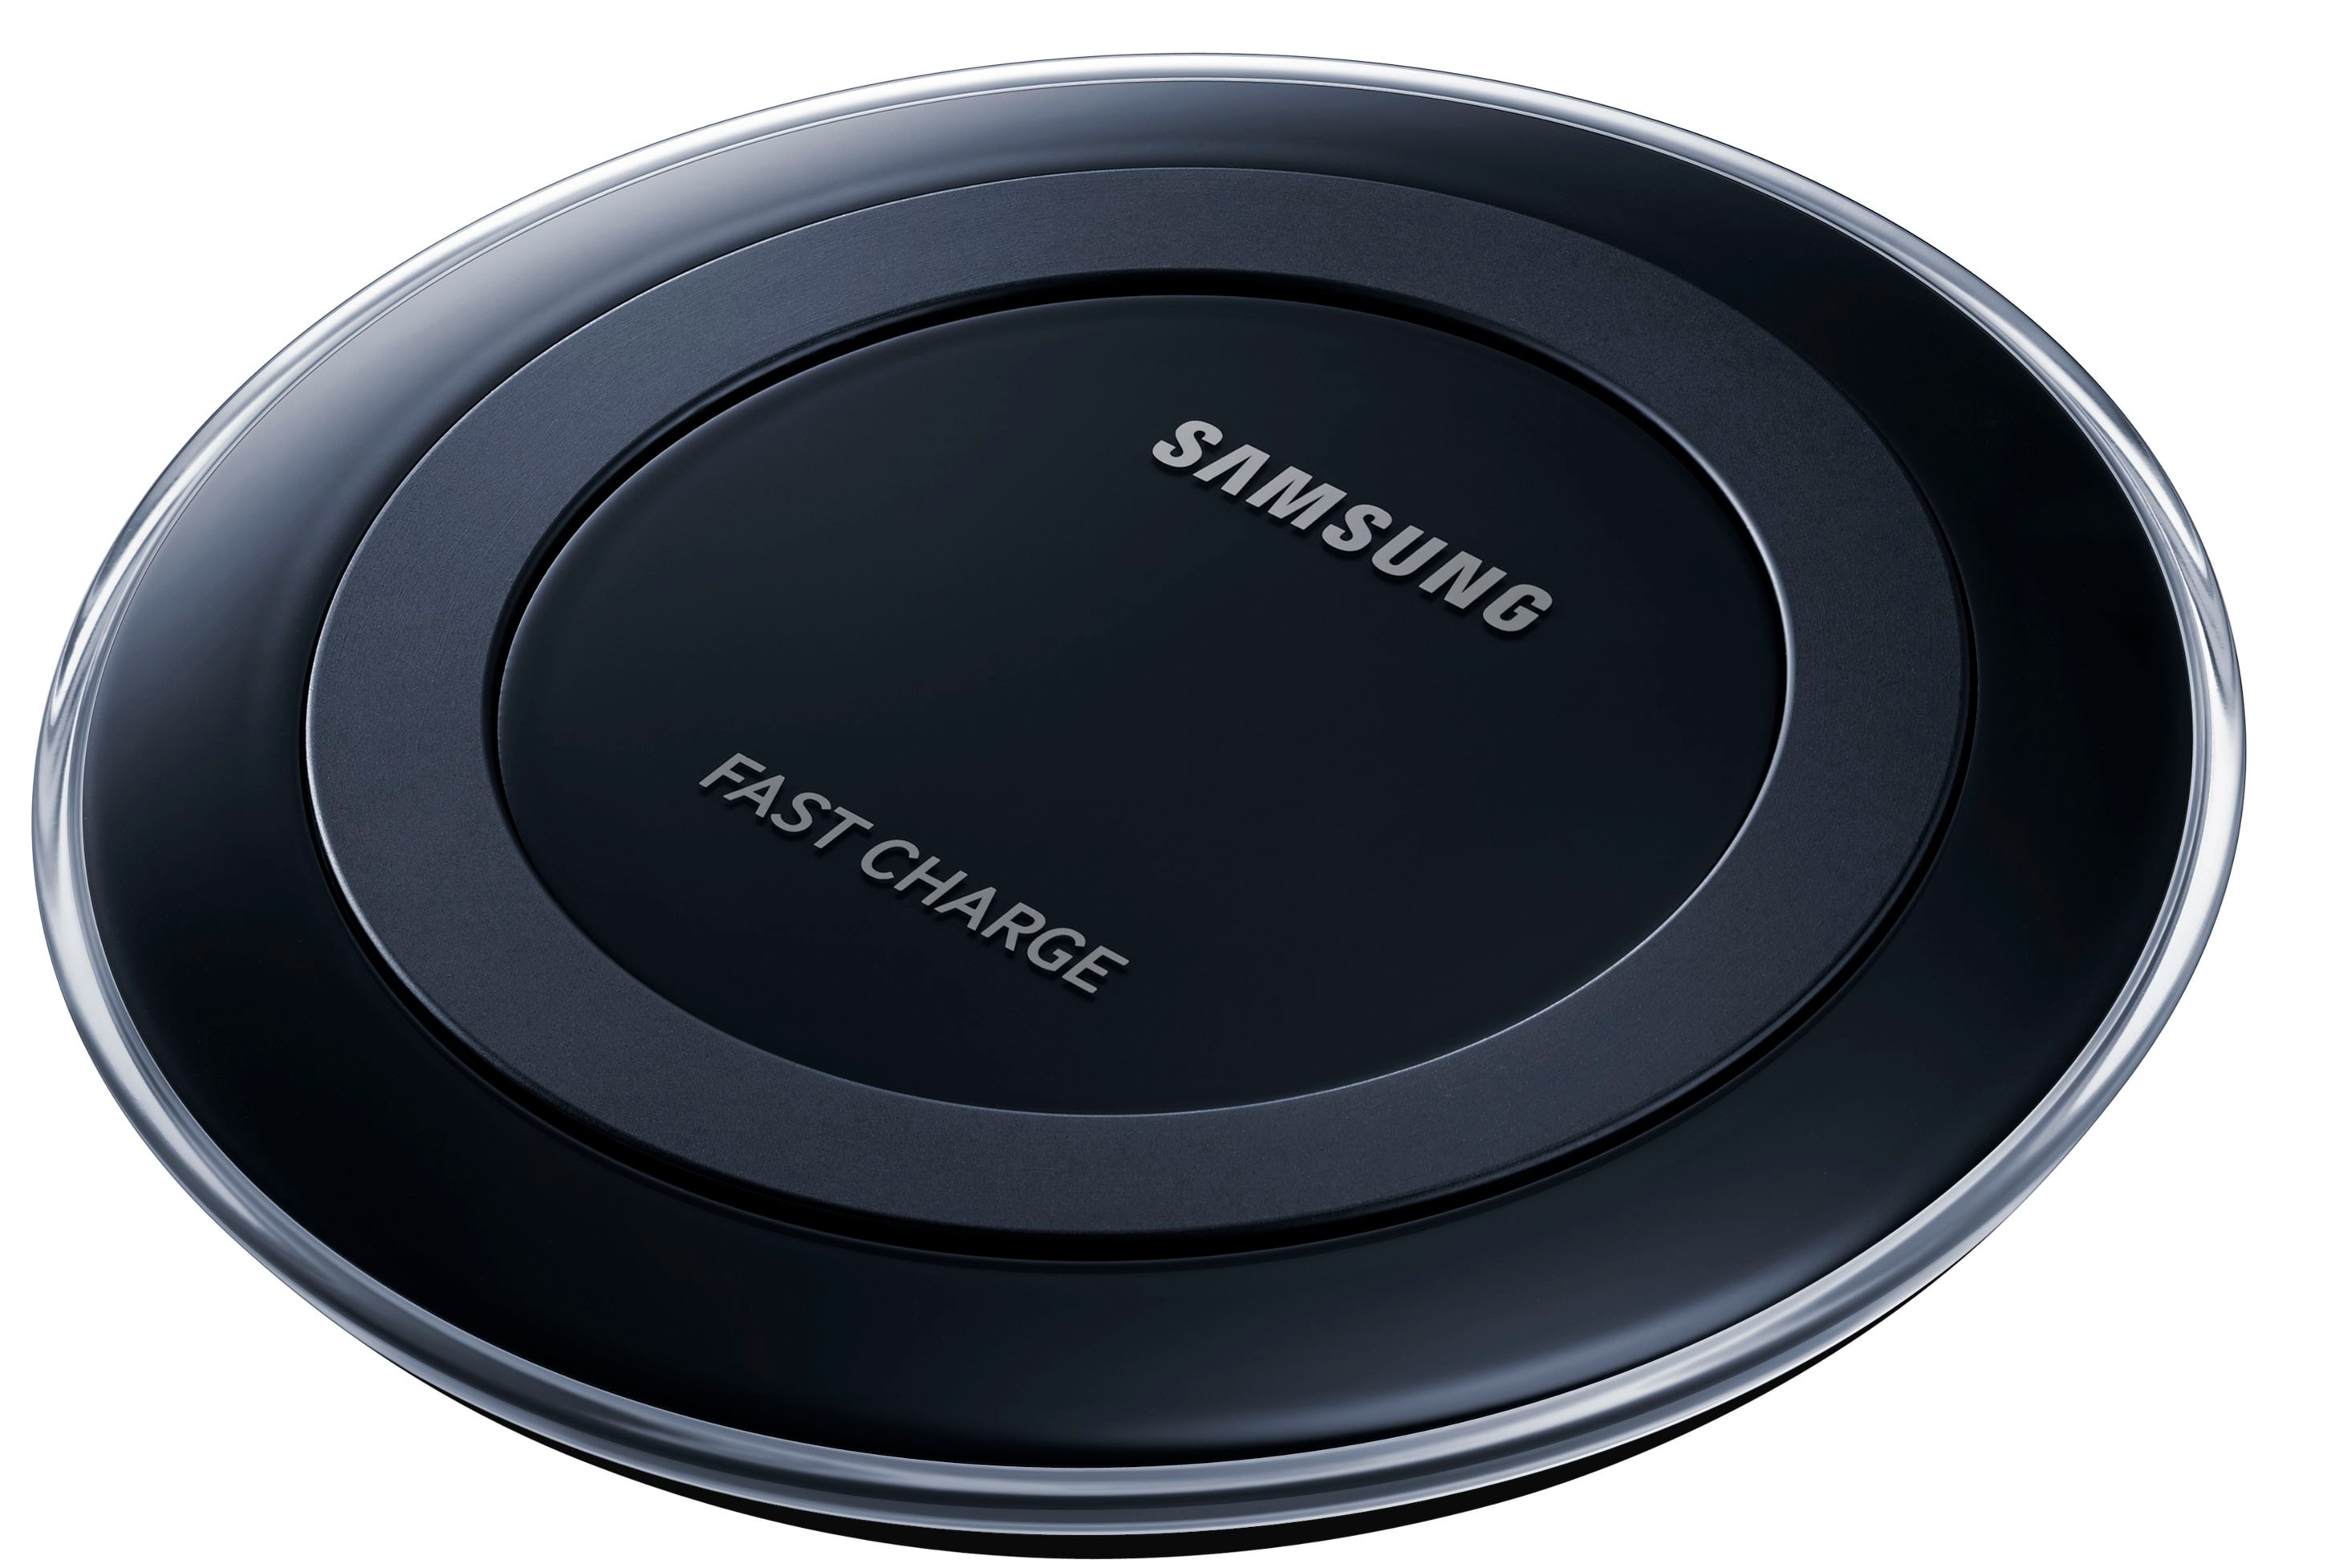 Samsung Fast trådløs lader (sort) - Trådløs lader til mobil - Elkjøp